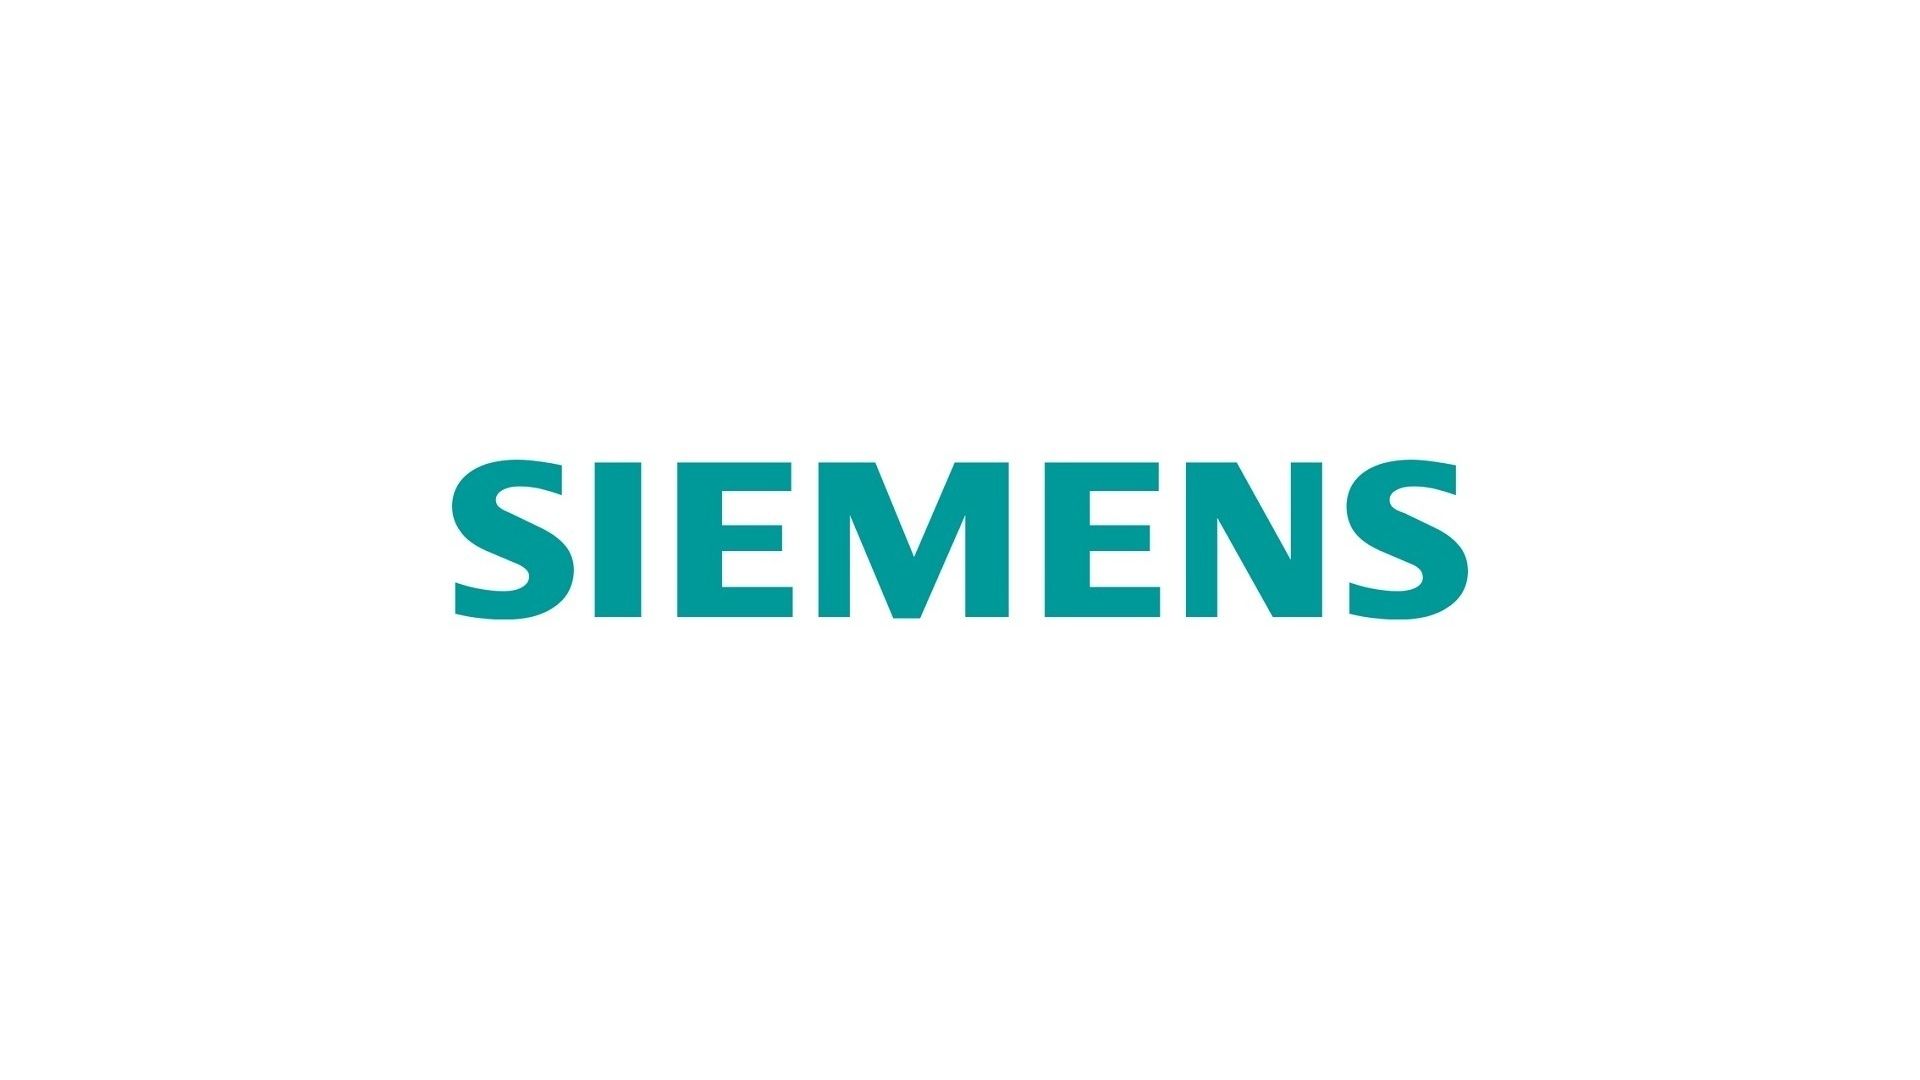 Siemens HD wallpapers  Pxfuel